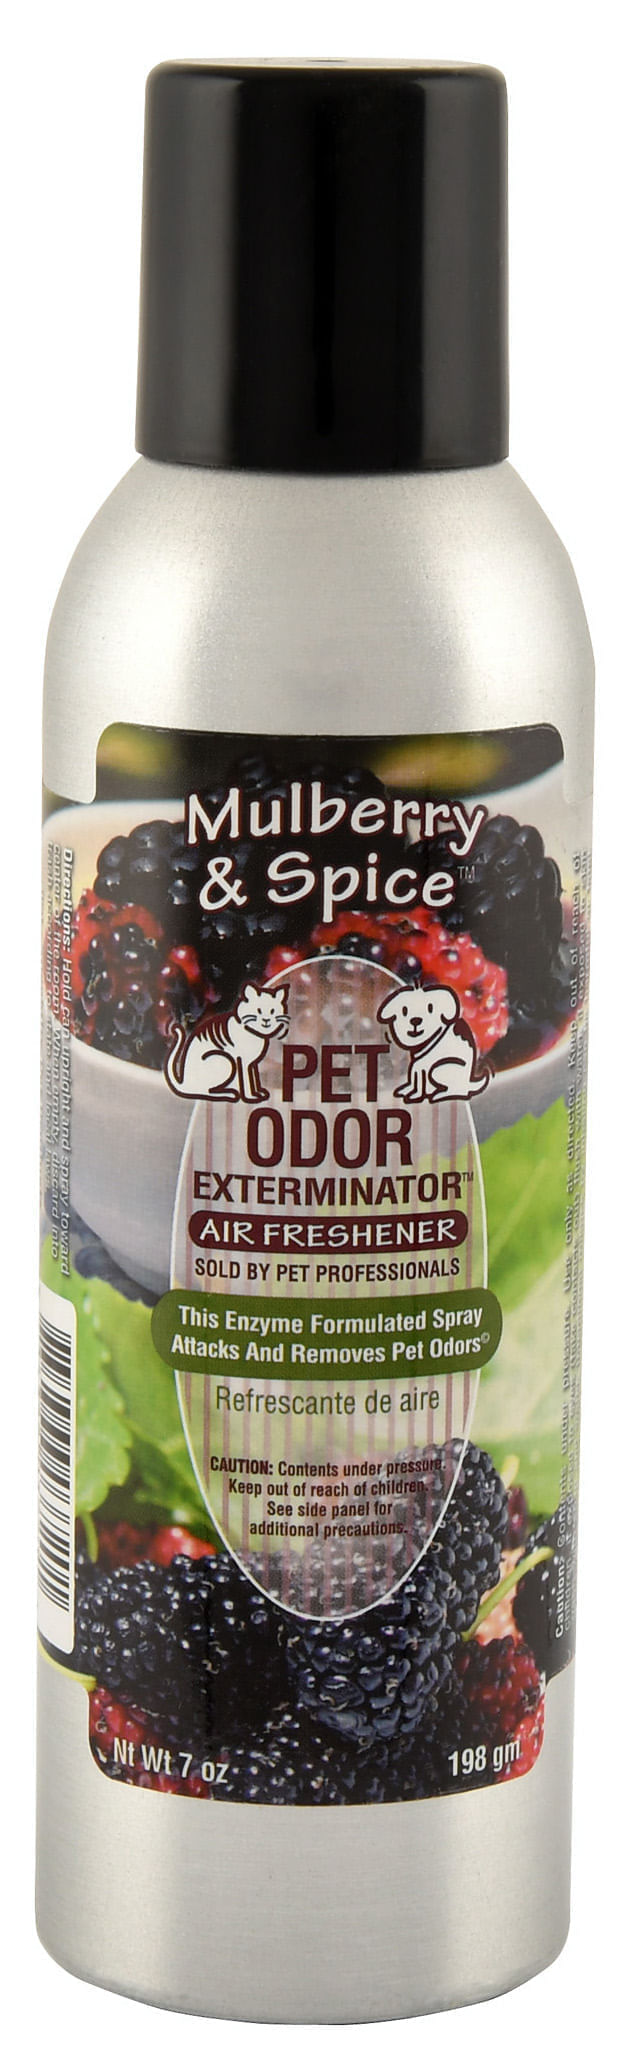 Pet-Odor-Exterminator-Spray-Mulberry-Spice